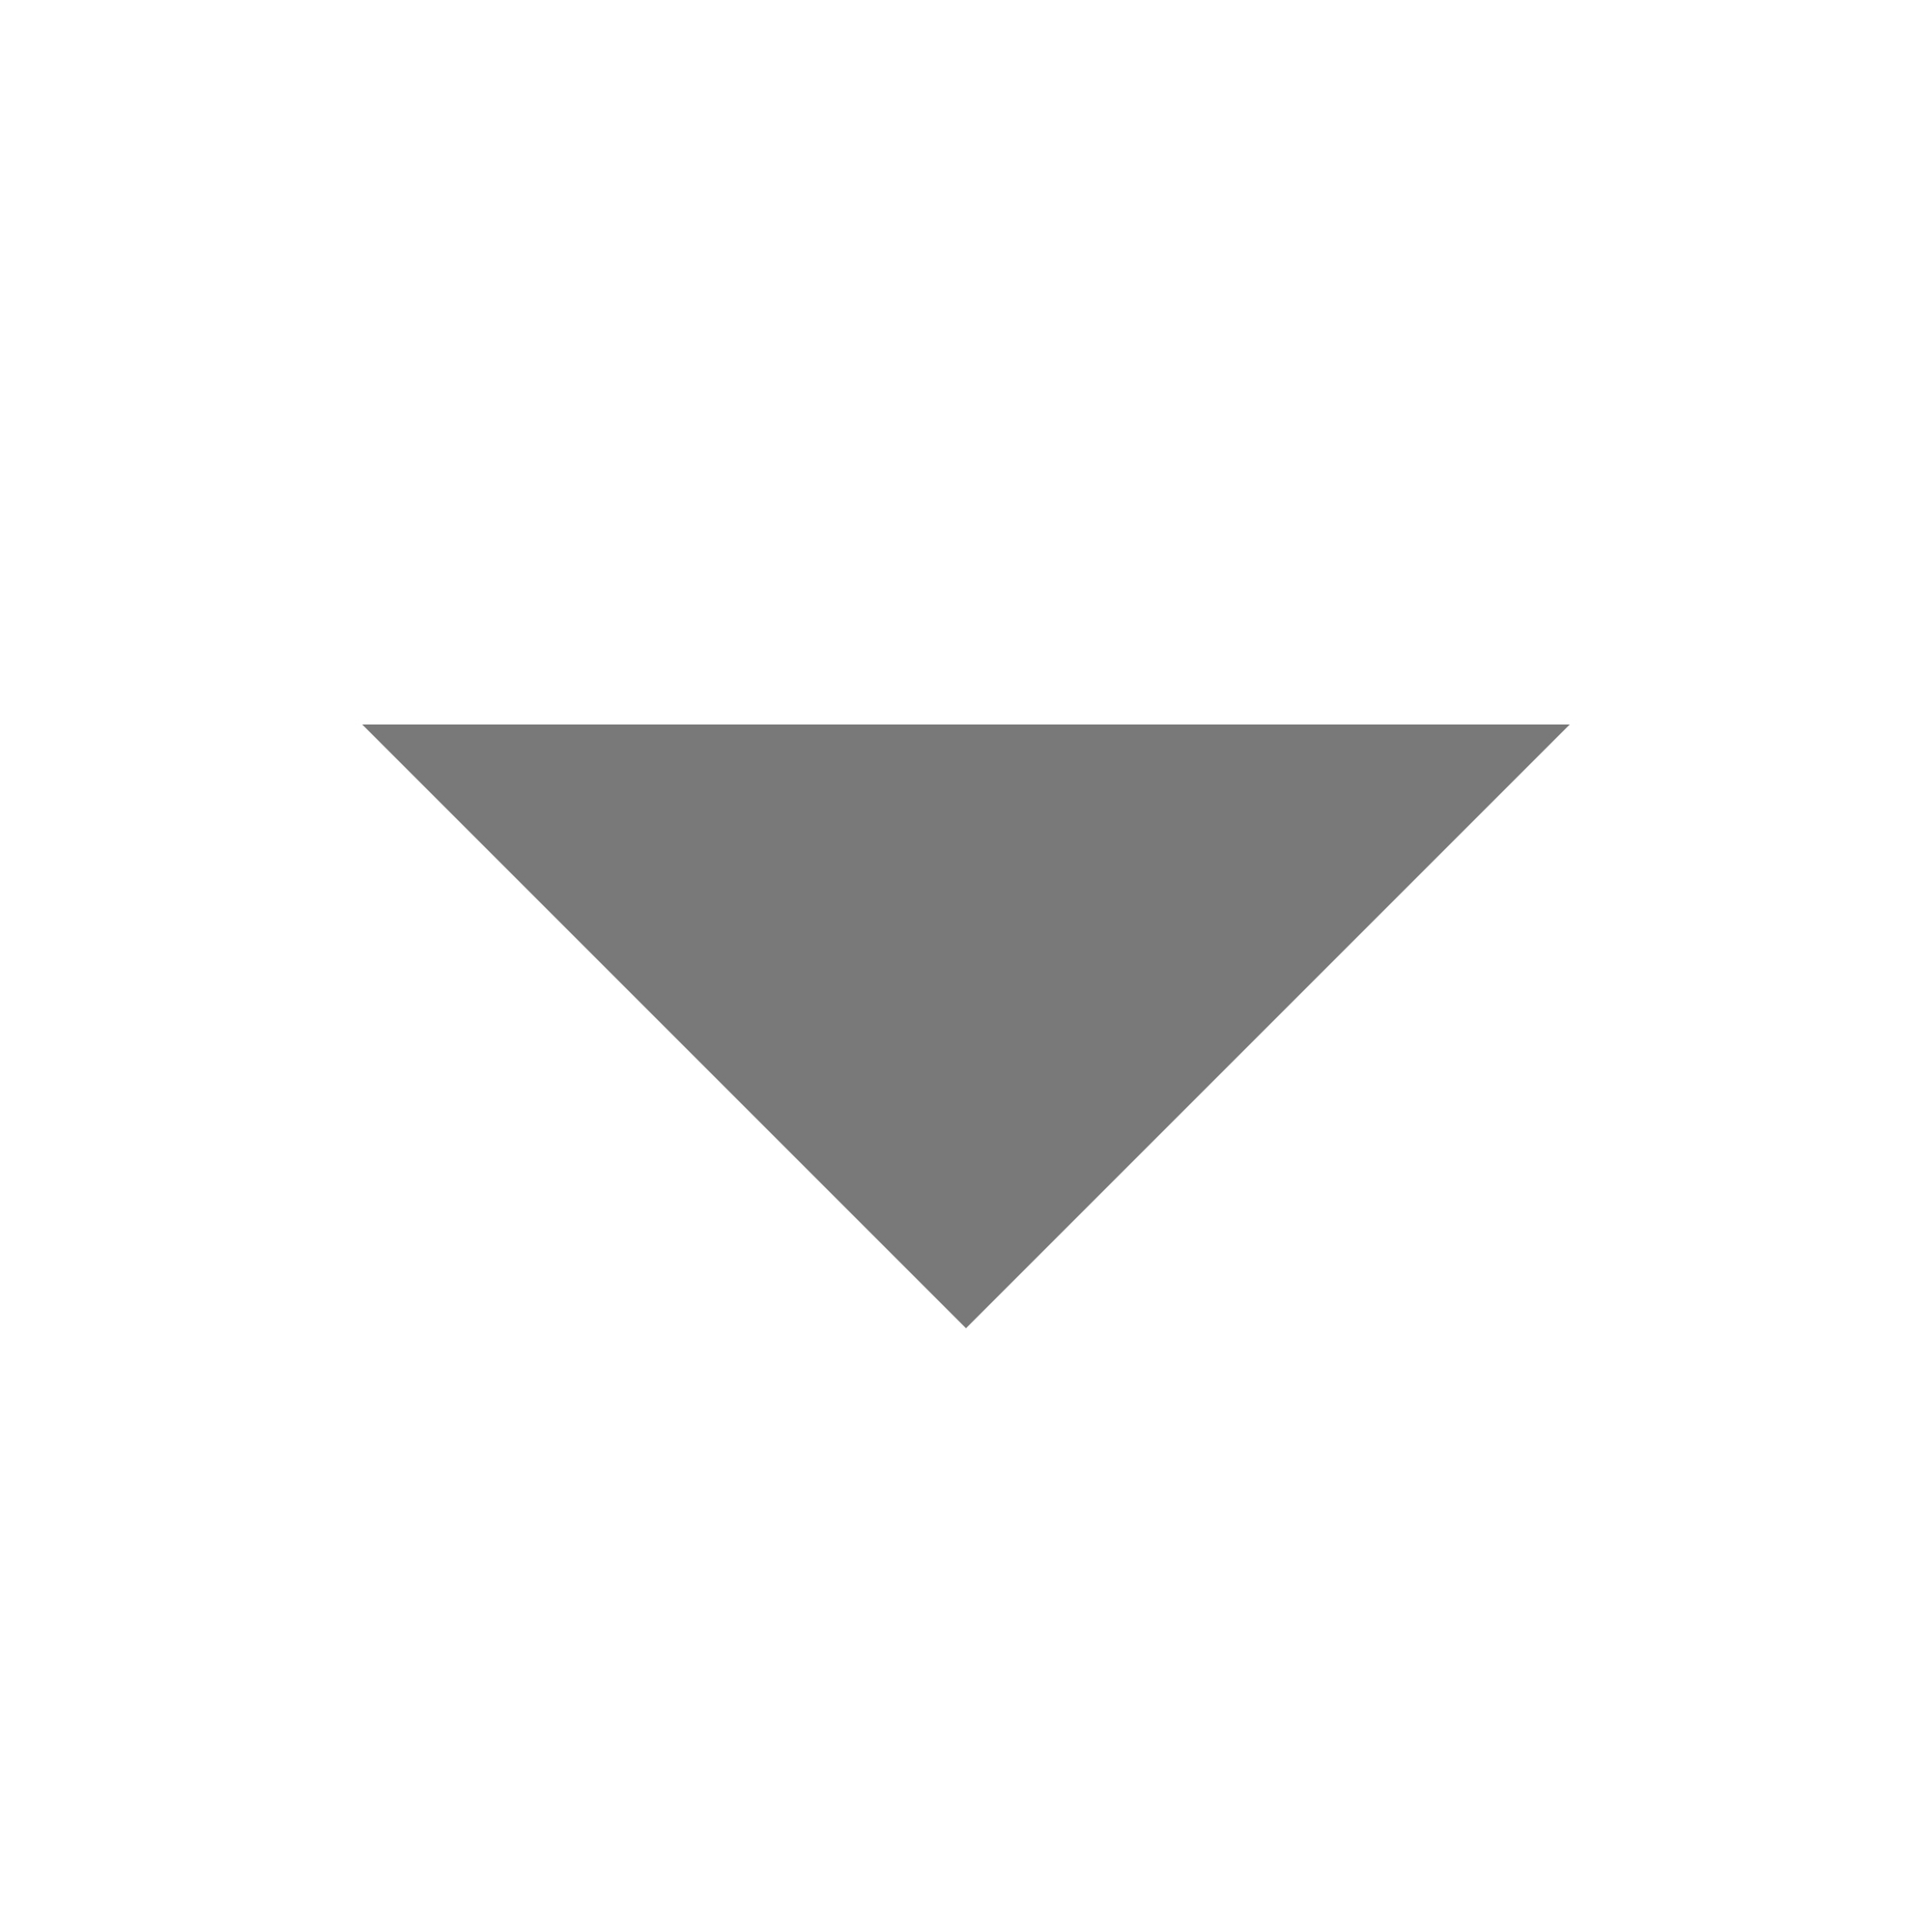 white-down-arrow-icon-png